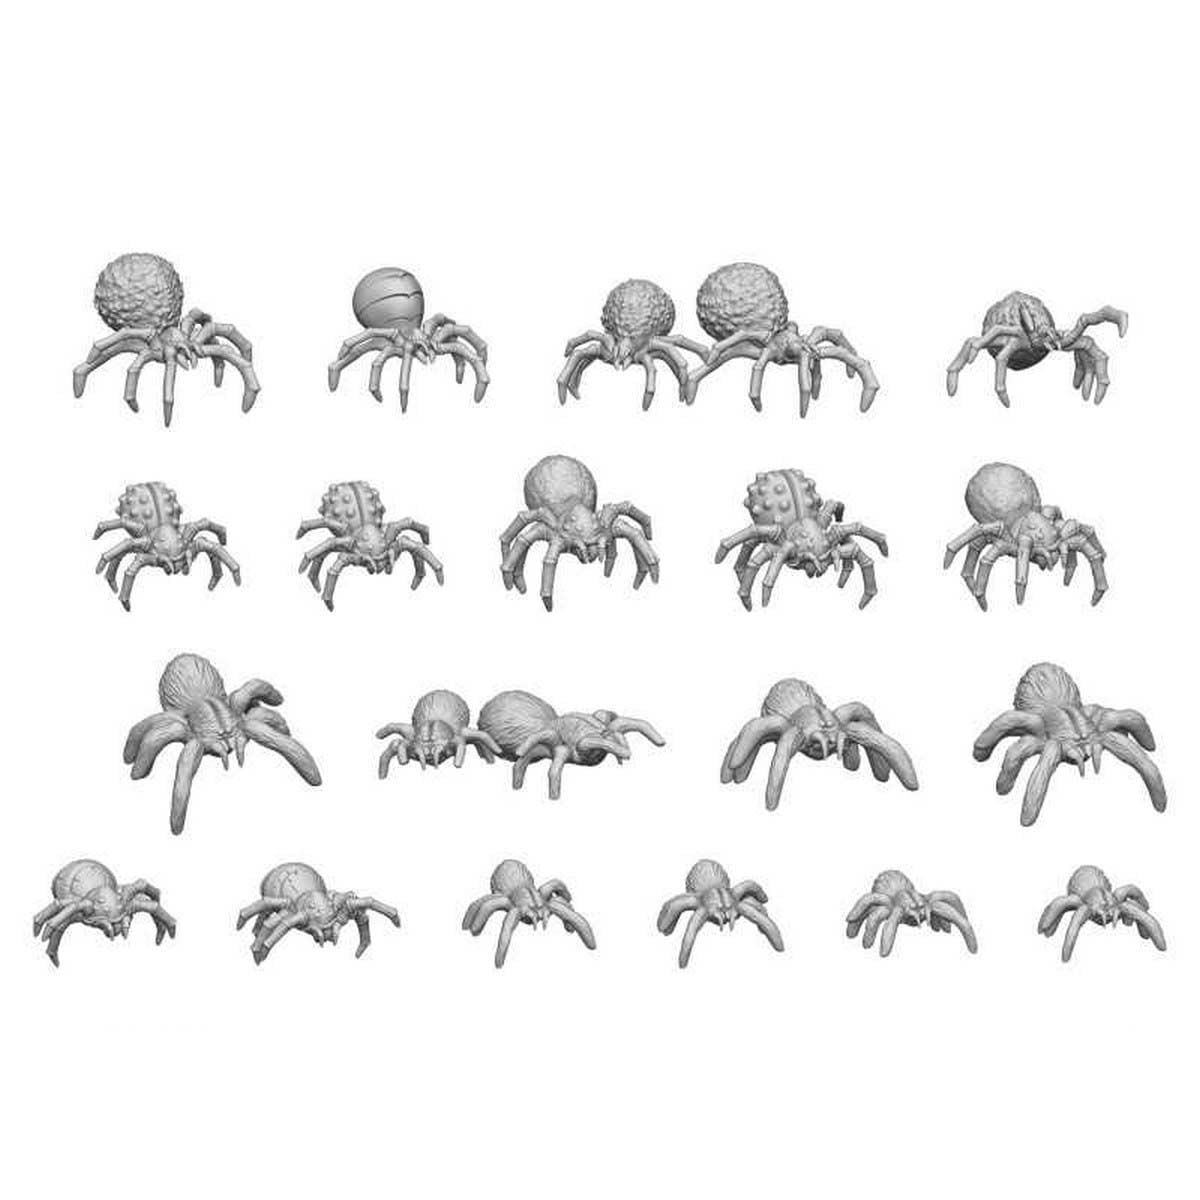 3D Printed Set - Big Spiders